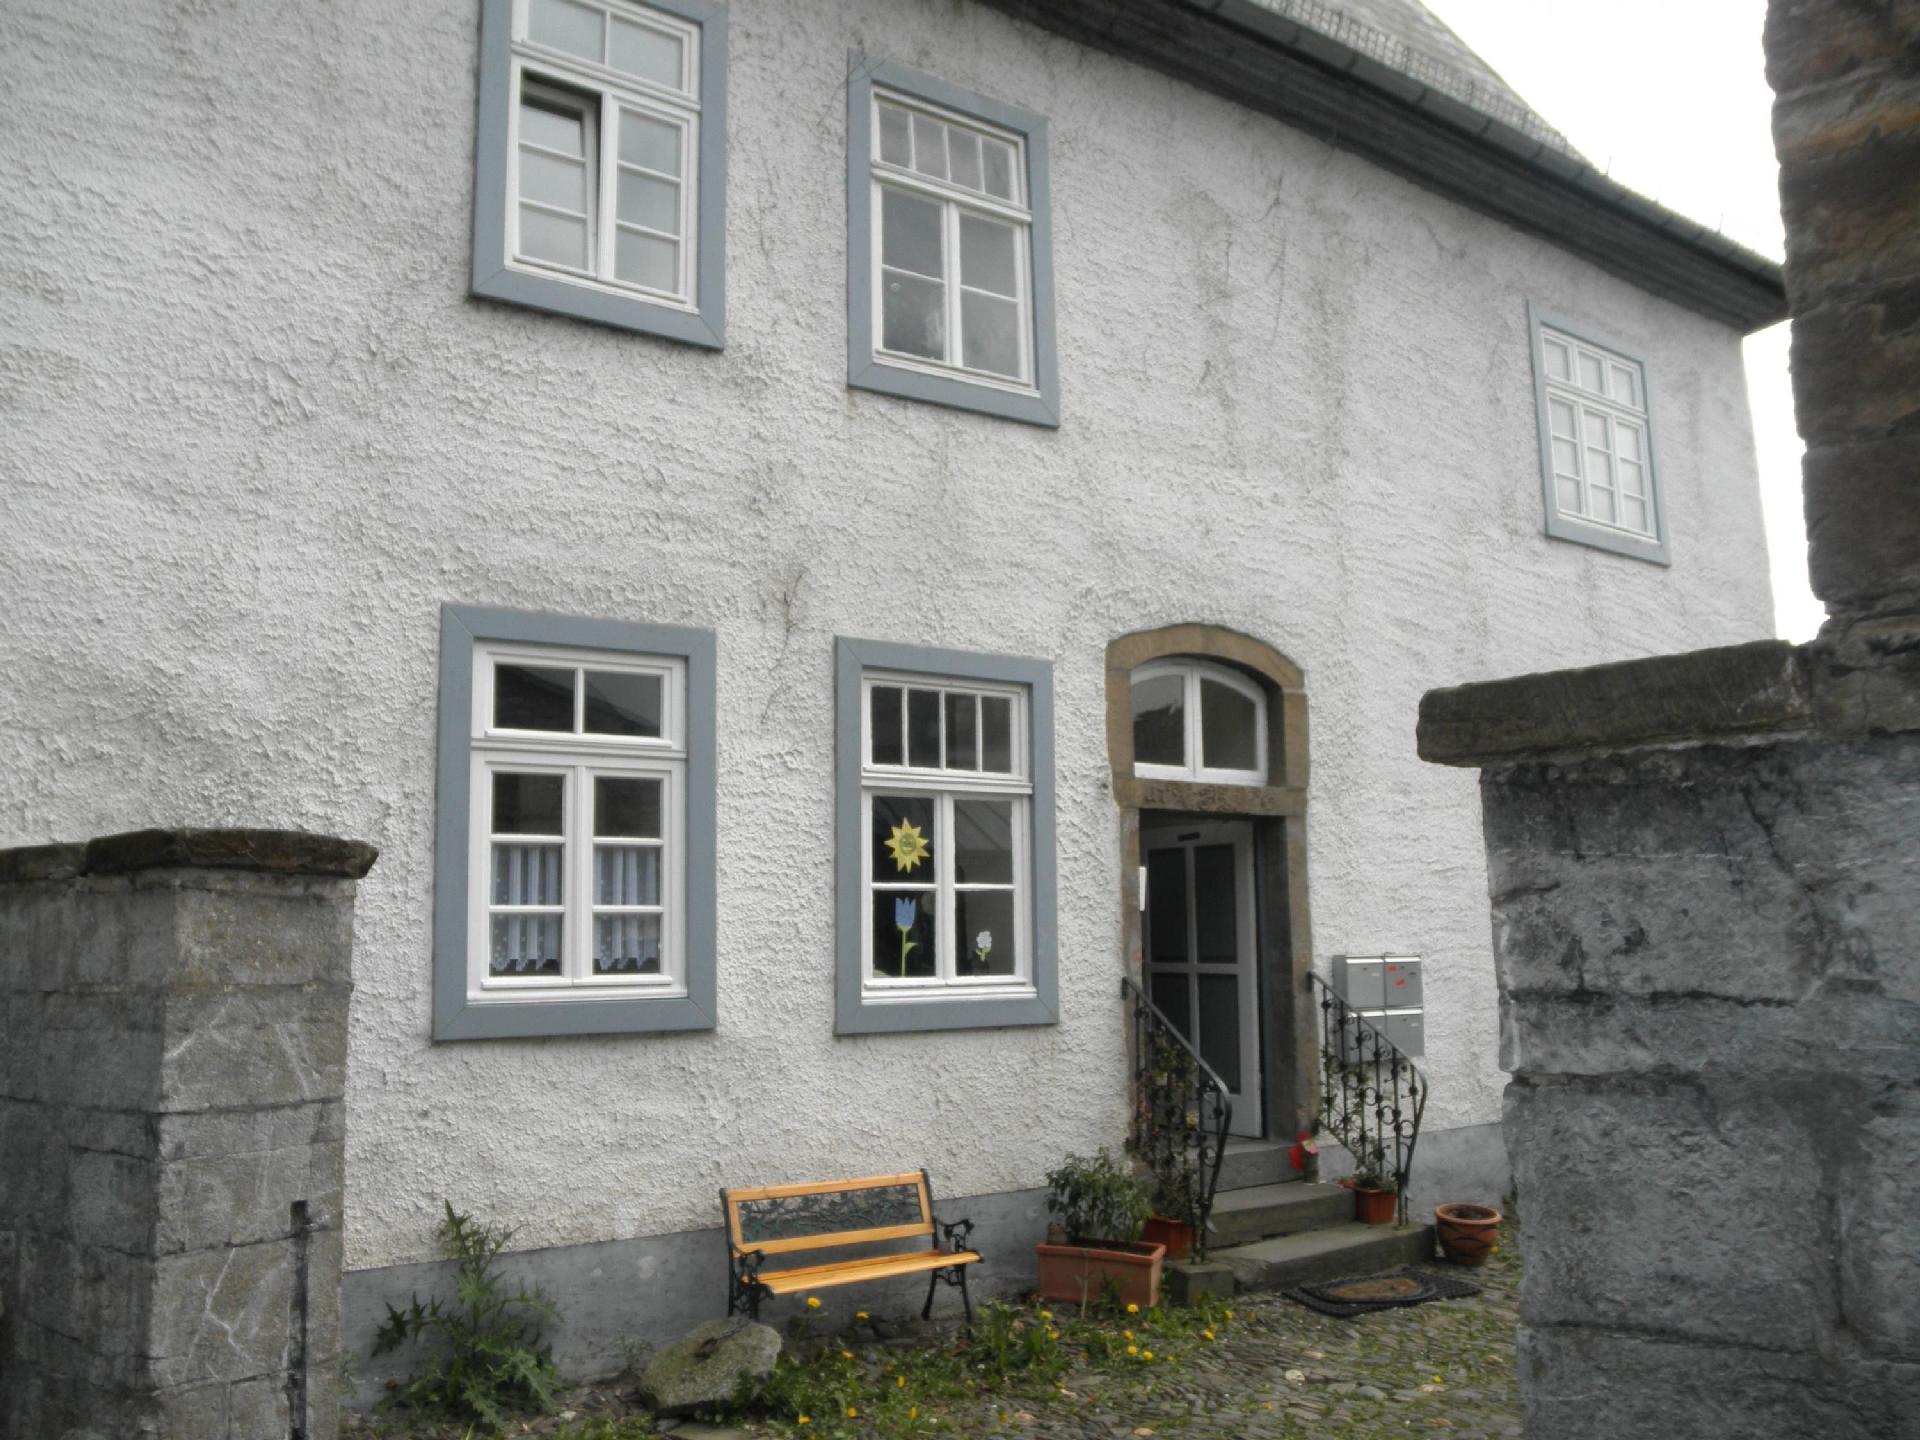 Wohnung in Arnsberg mit Grill und Garten Ferienwohnung in Europa